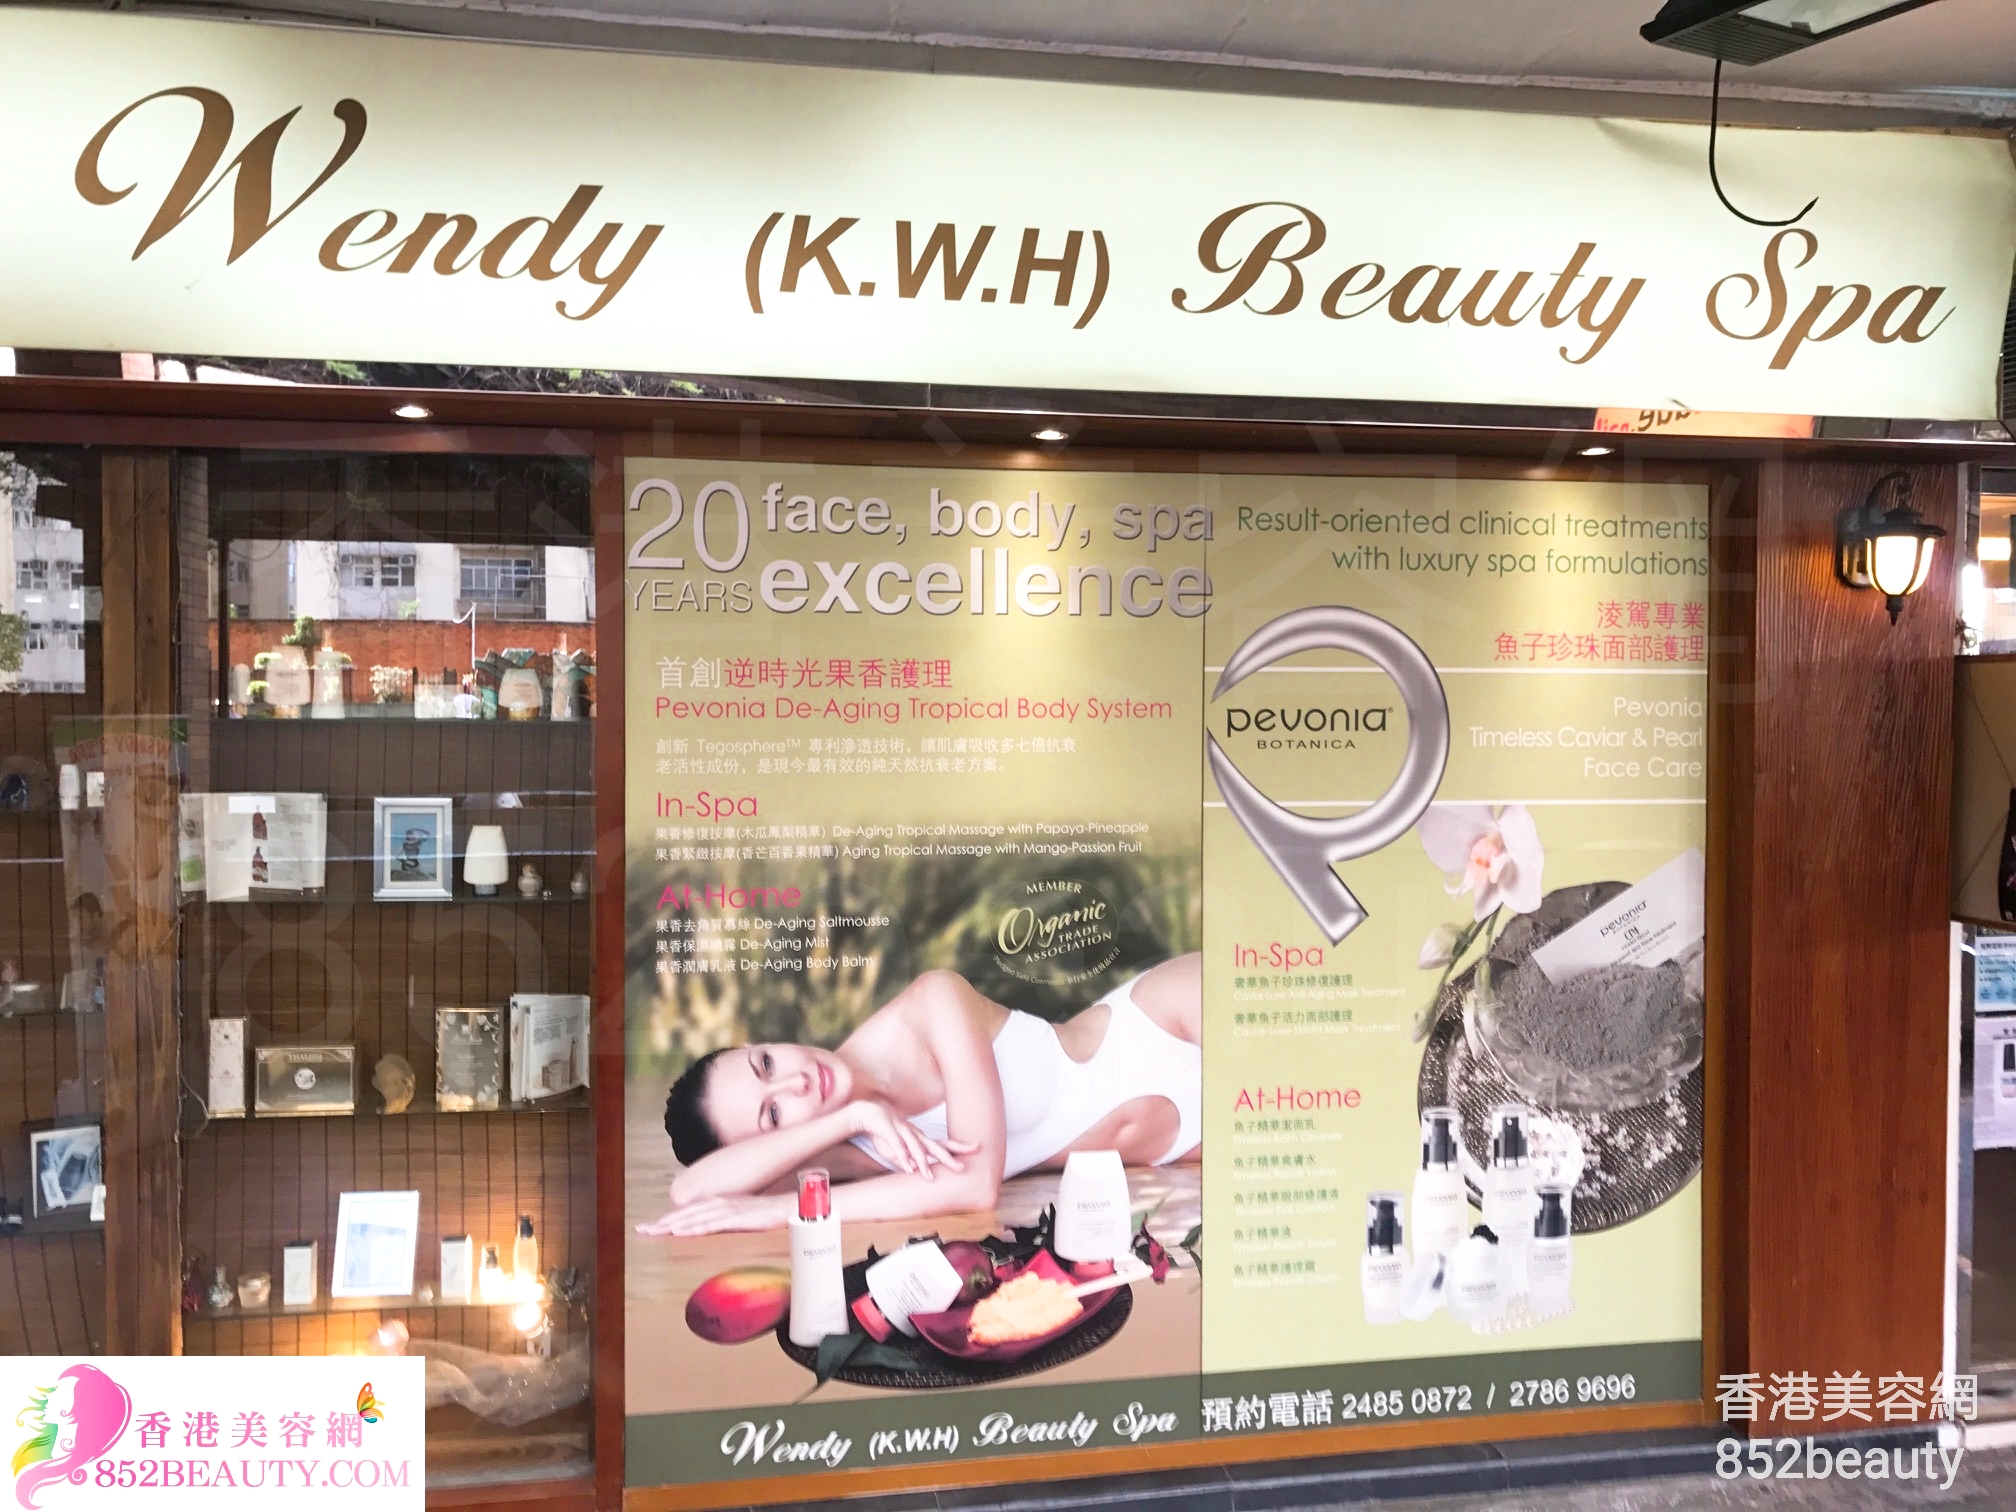 脫毛: Wendy (K.W.H) Beauty Spa